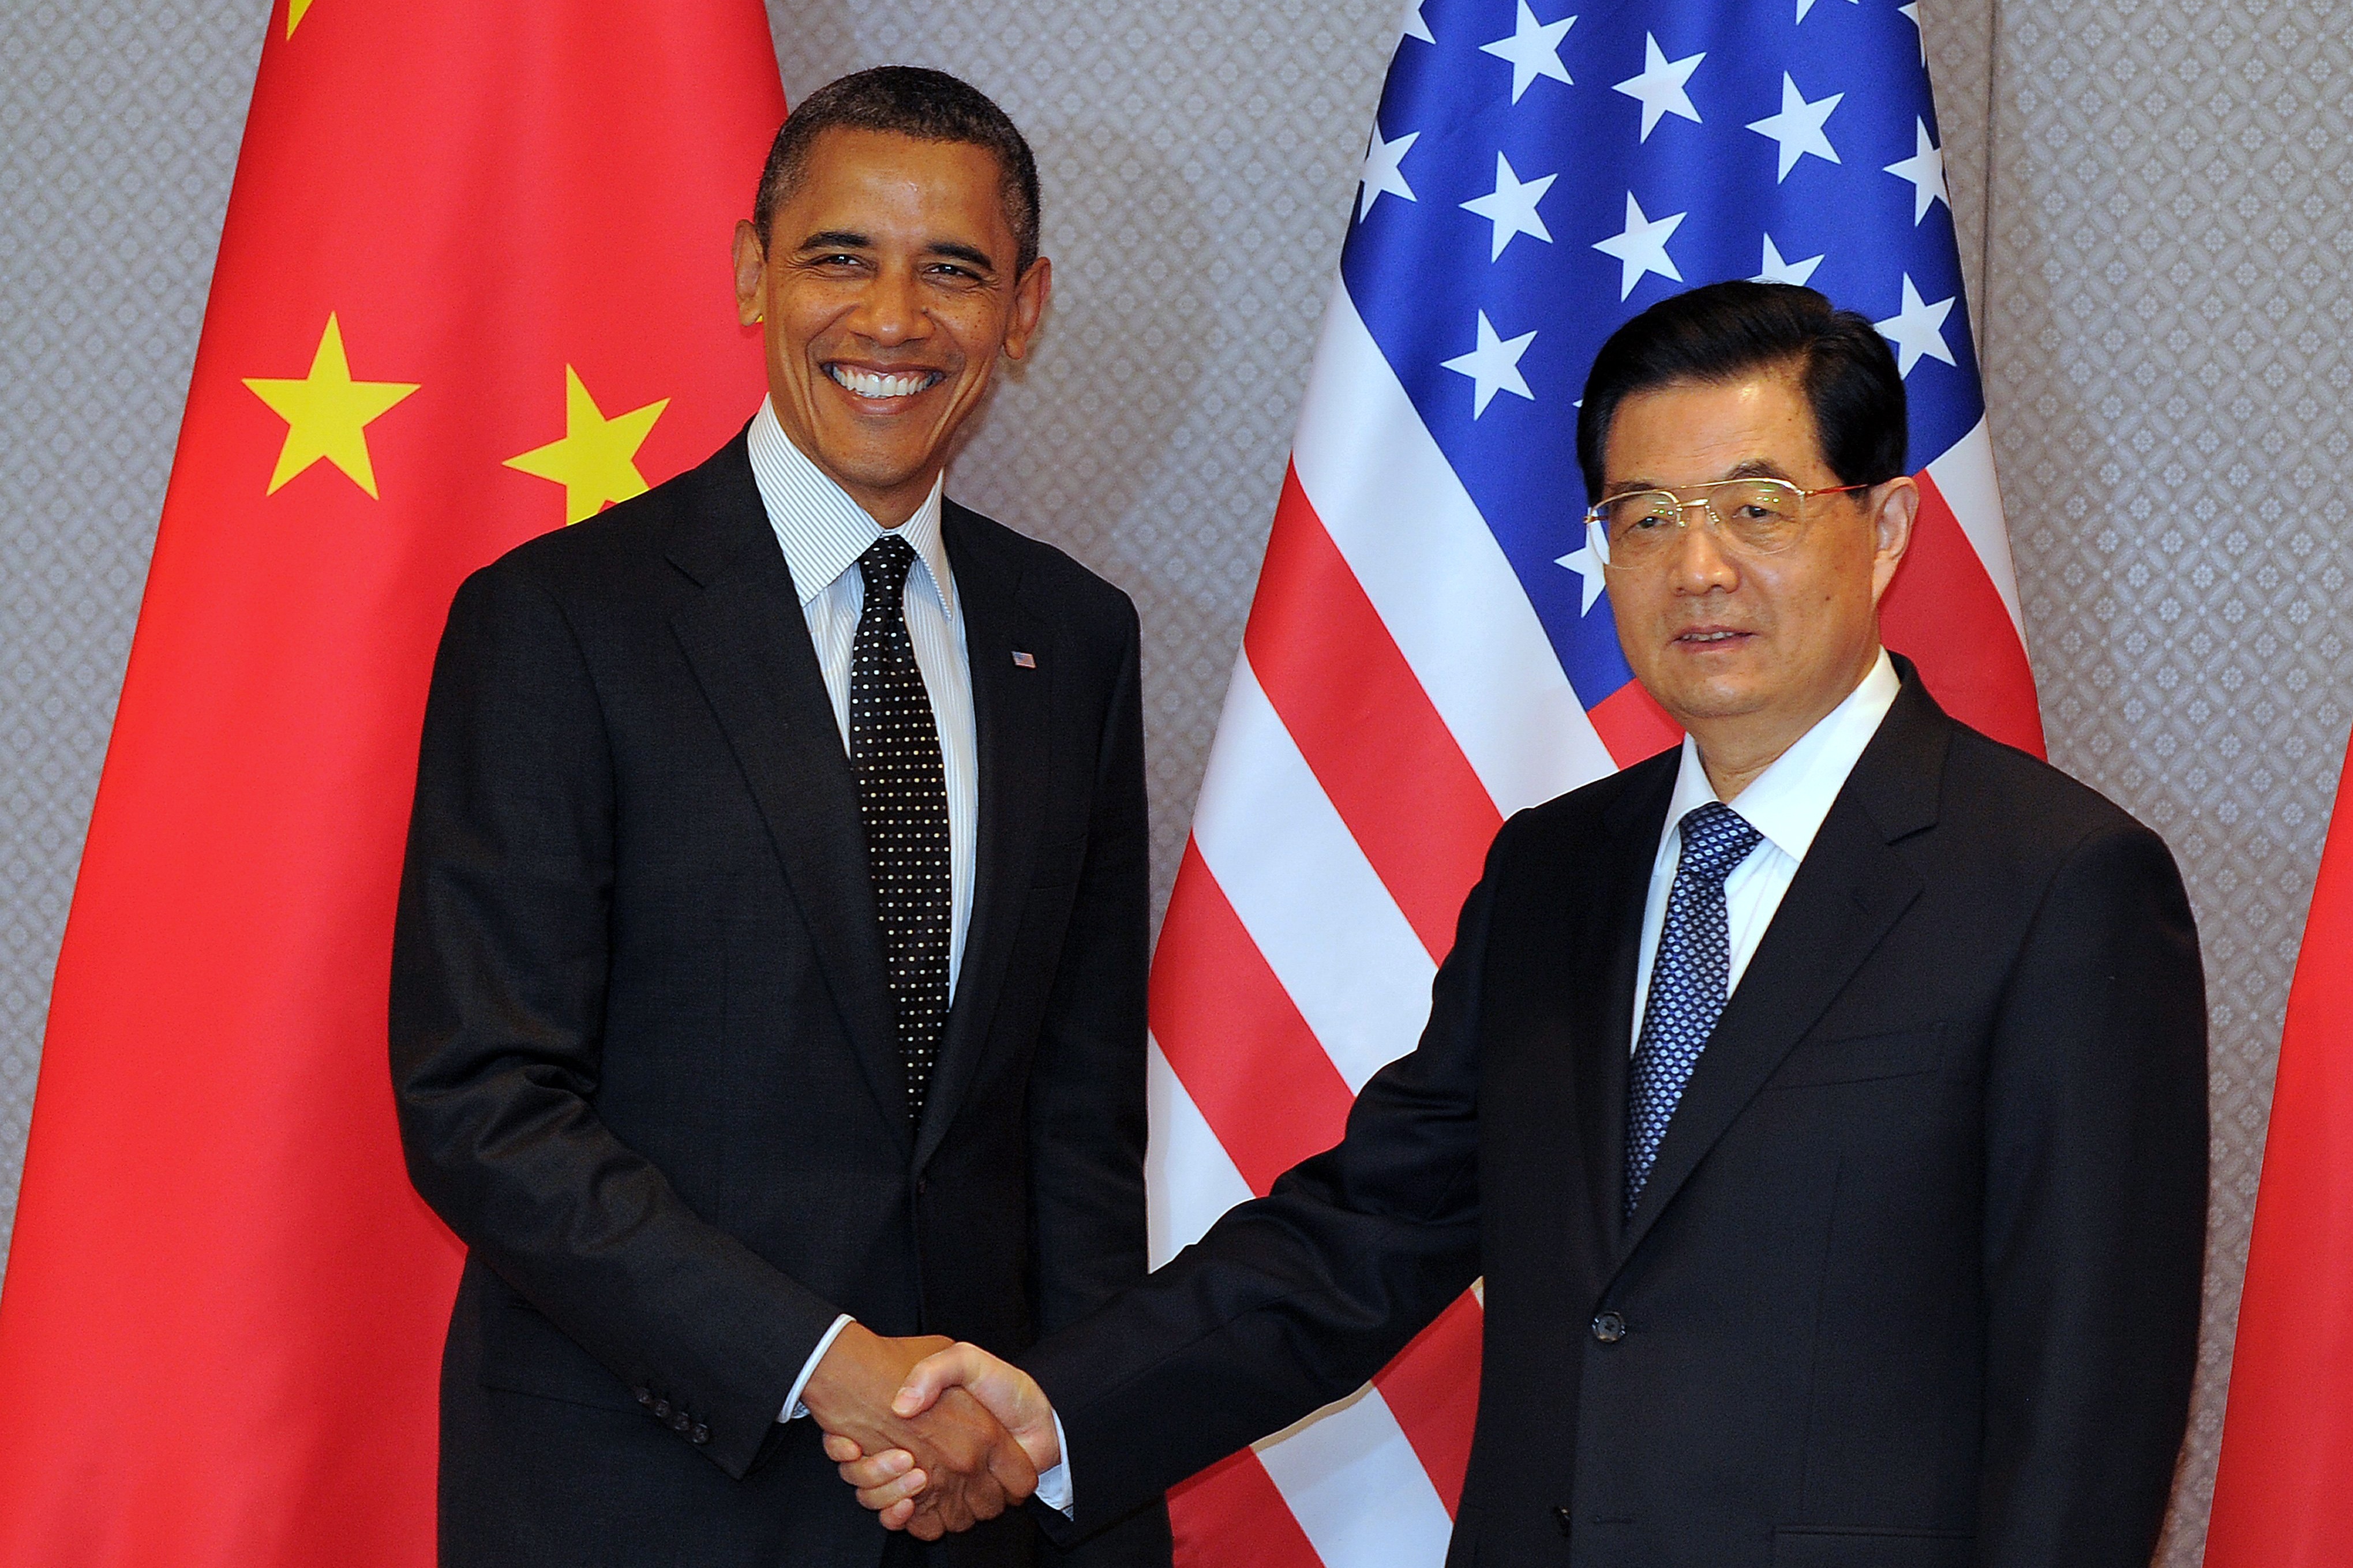 Ironie in Begrüßung von Barack Obama erregt China